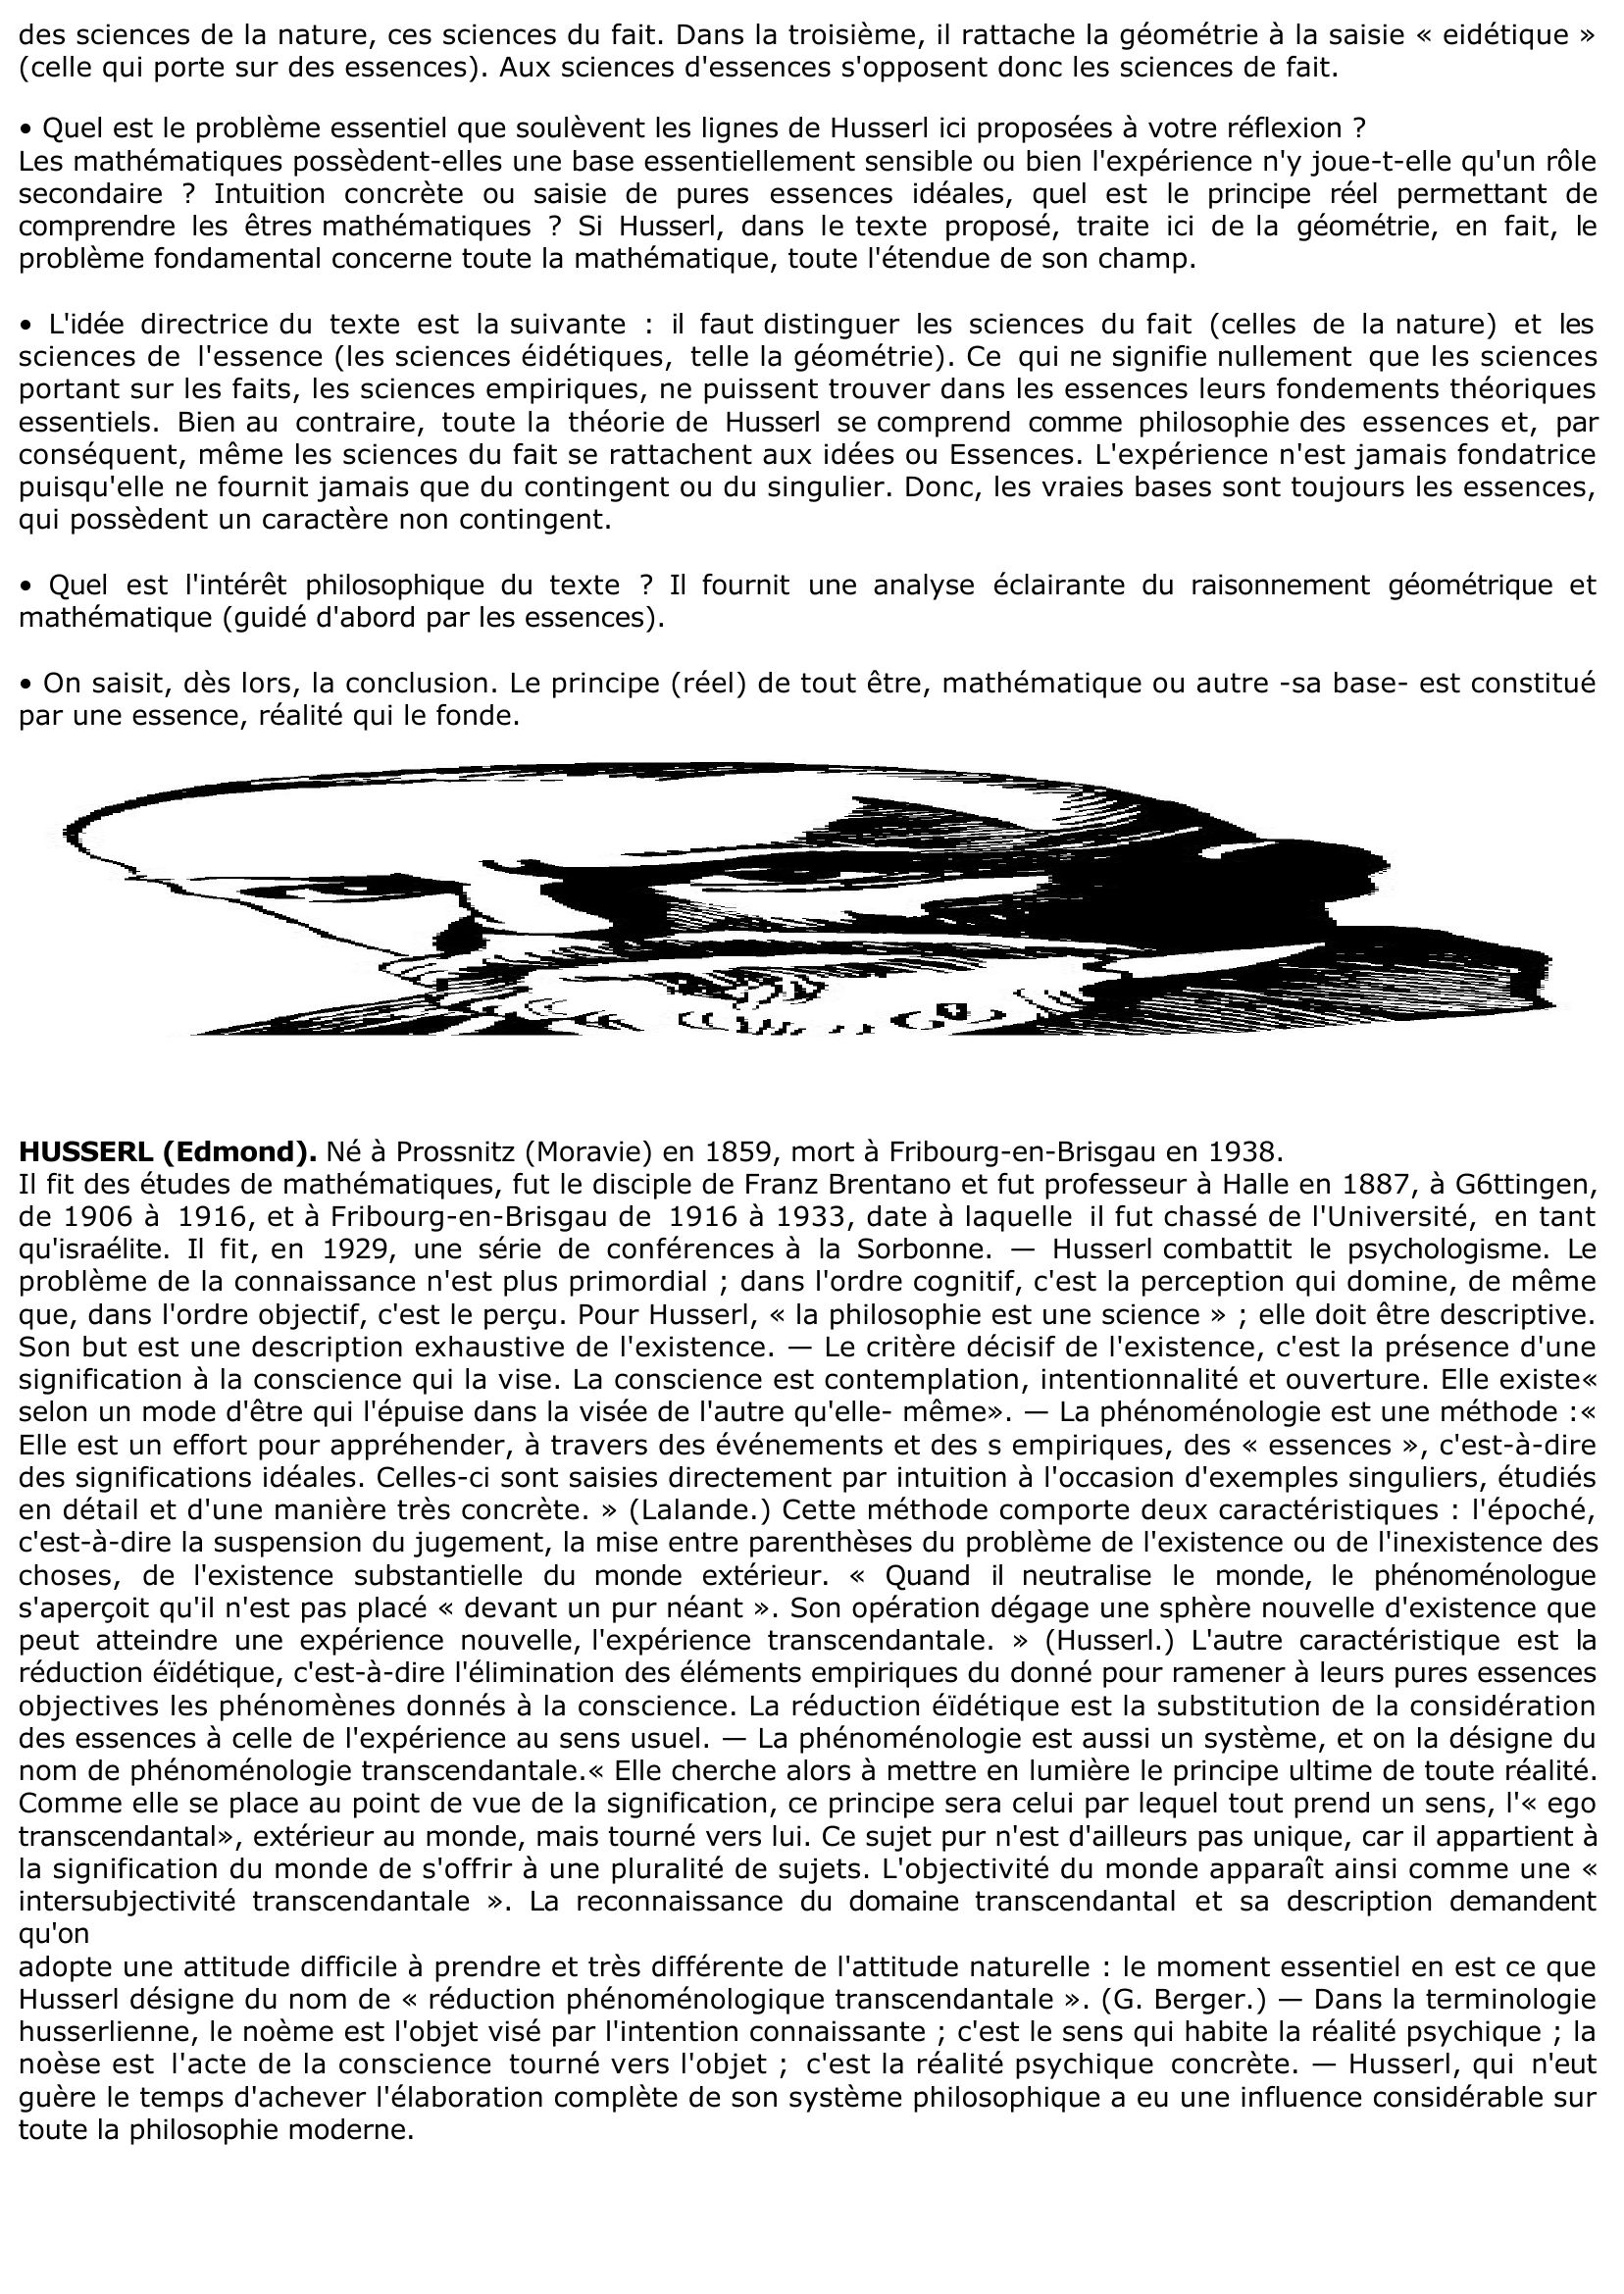 Prévisualisation du document Husserl: sciences de la nature et sciences géométriques